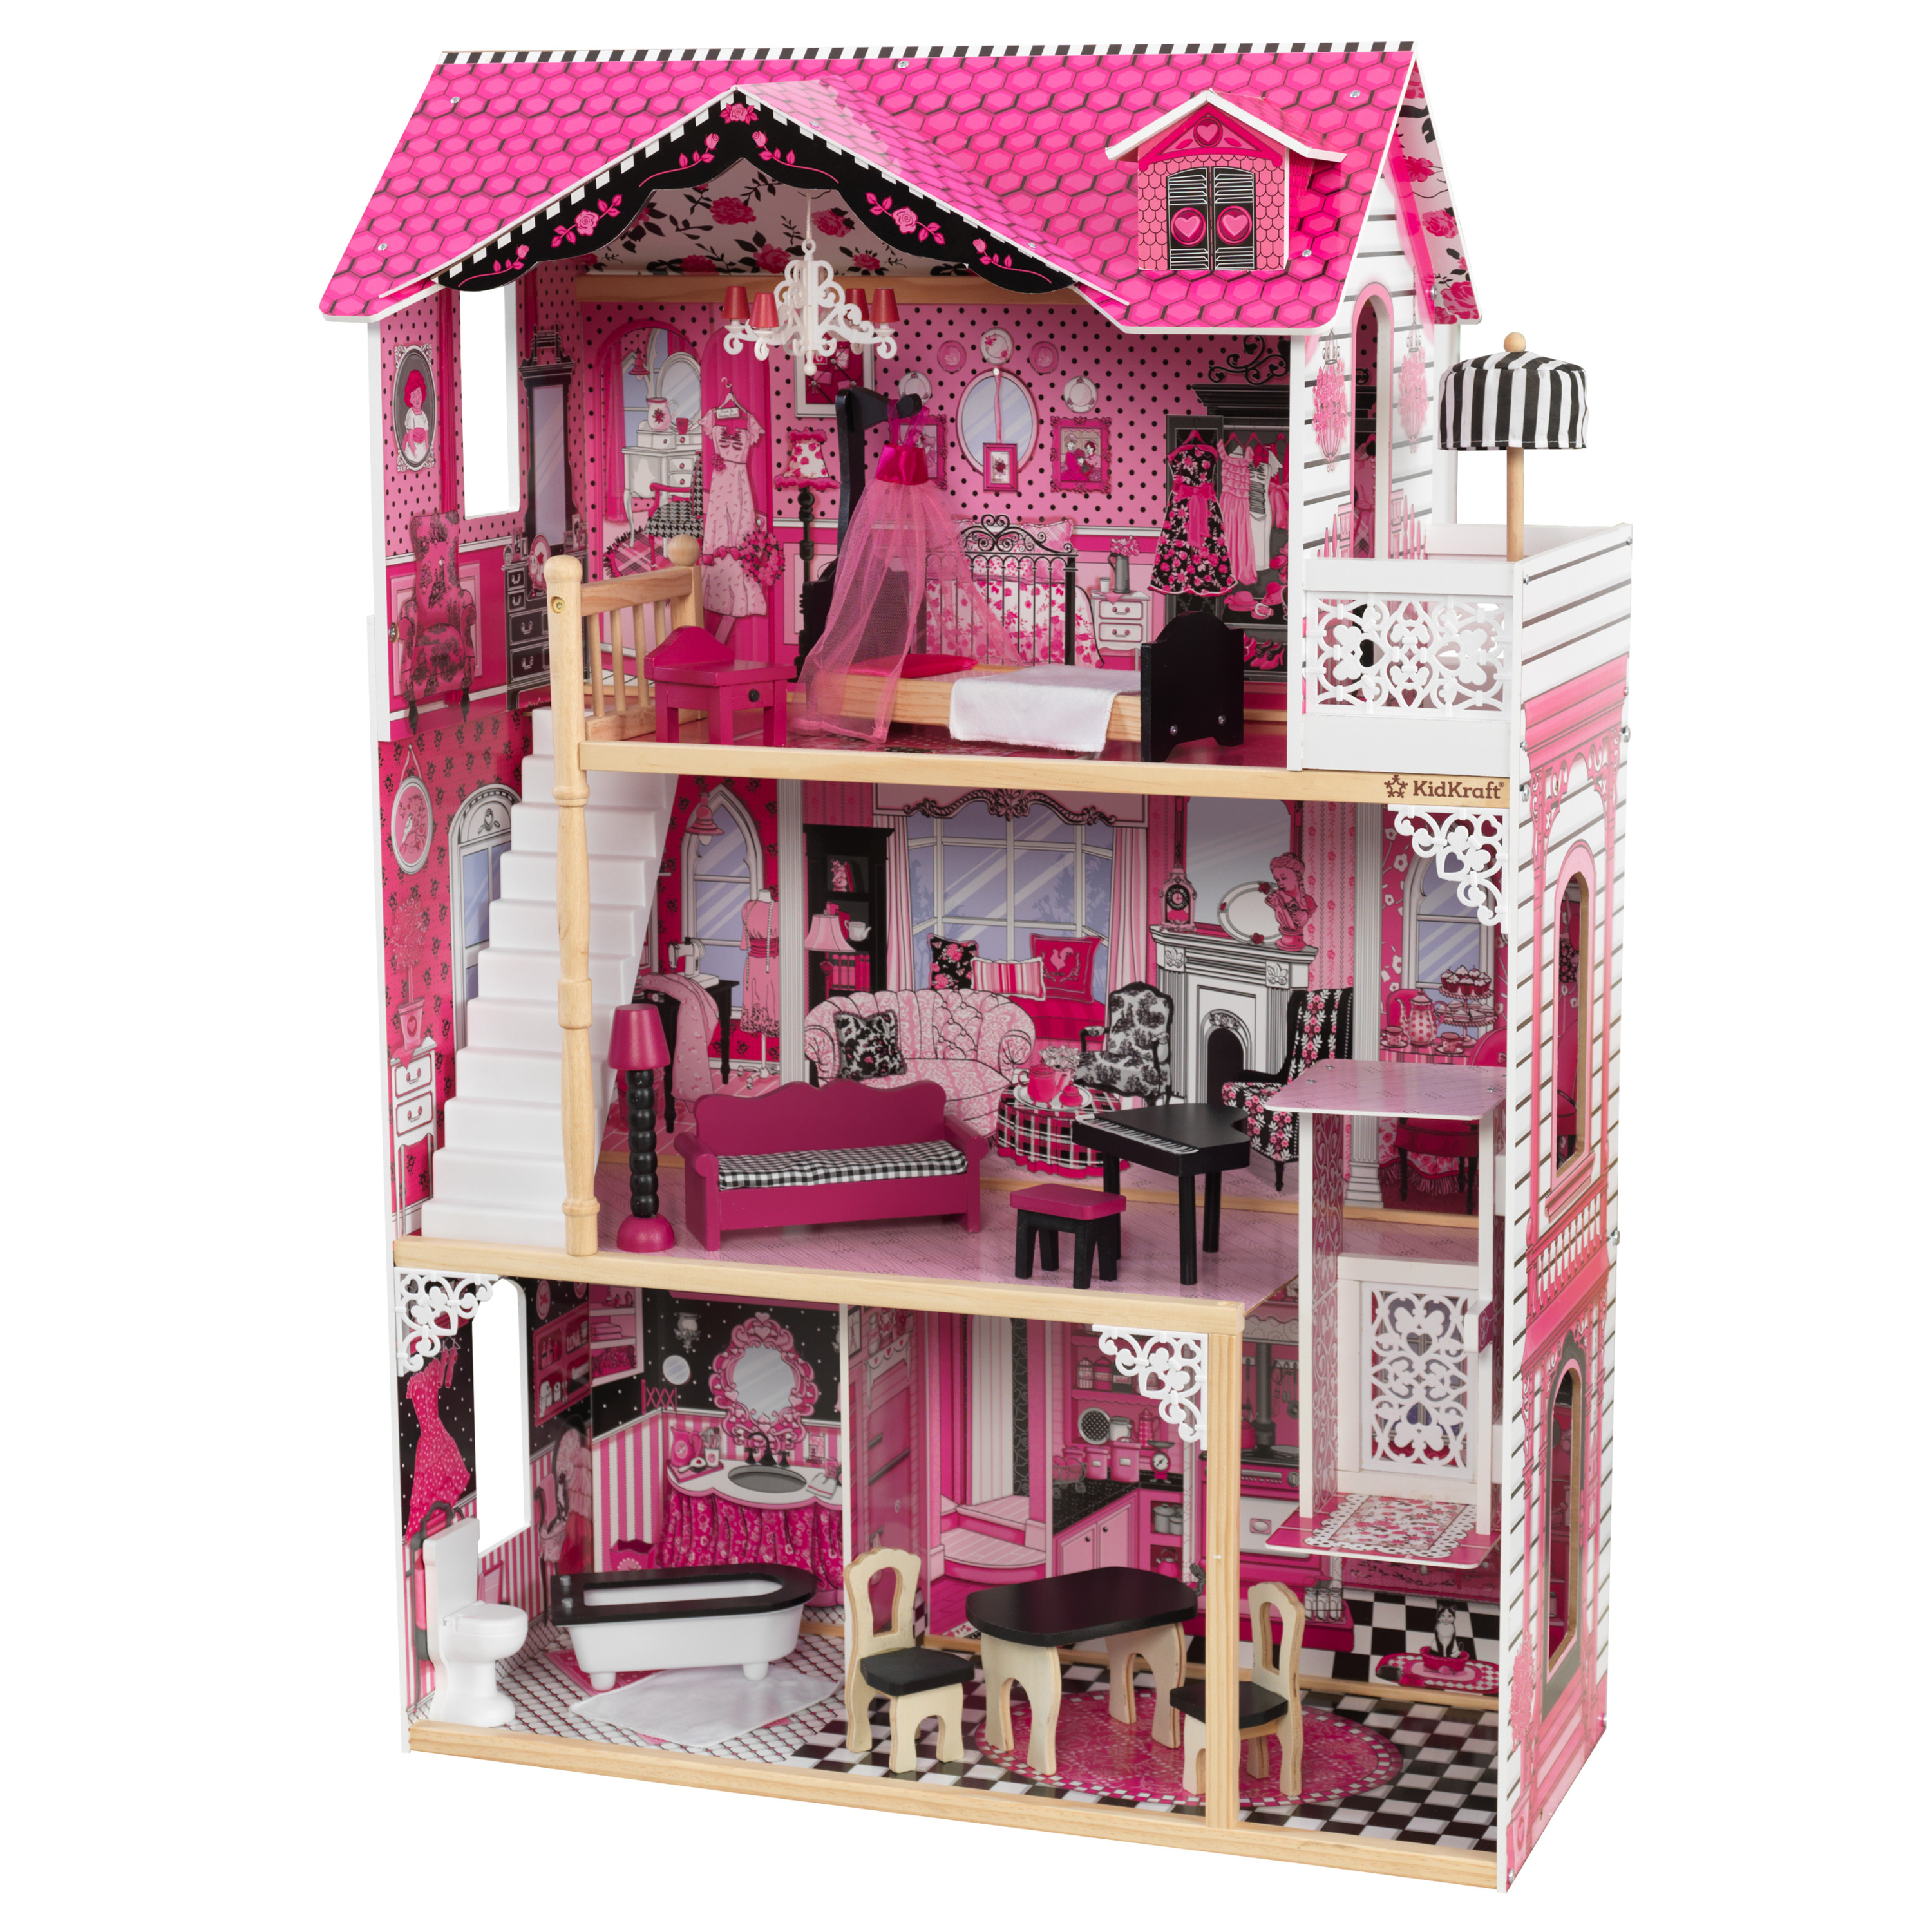 Barbie Casa dei Sogni - Playset Casa di Barbie 3 piani - Piscina - Scivolo  - Ascensore - Oltre 75 Accessori - Alta 110 cm - Regalo per Bambini 3-7  Anni, GRG93 : : Giochi e giocattoli